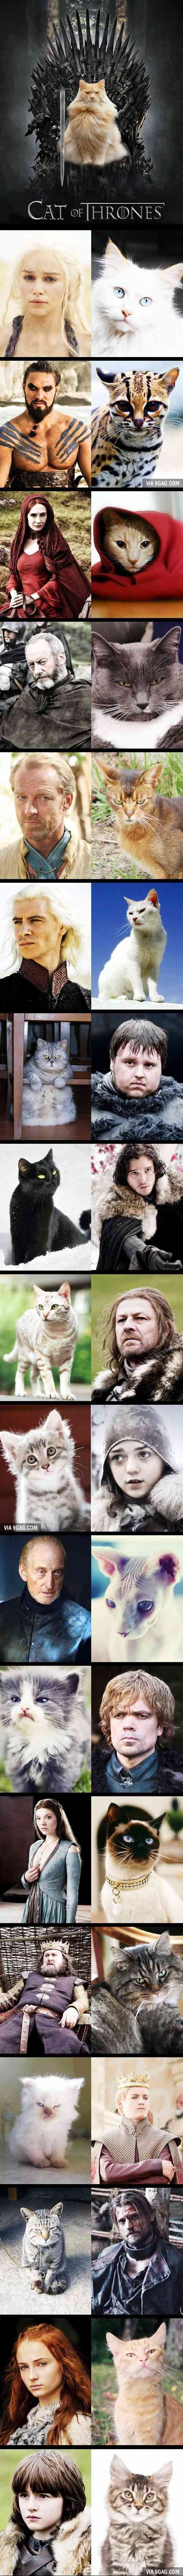 Cat of Thrones 9